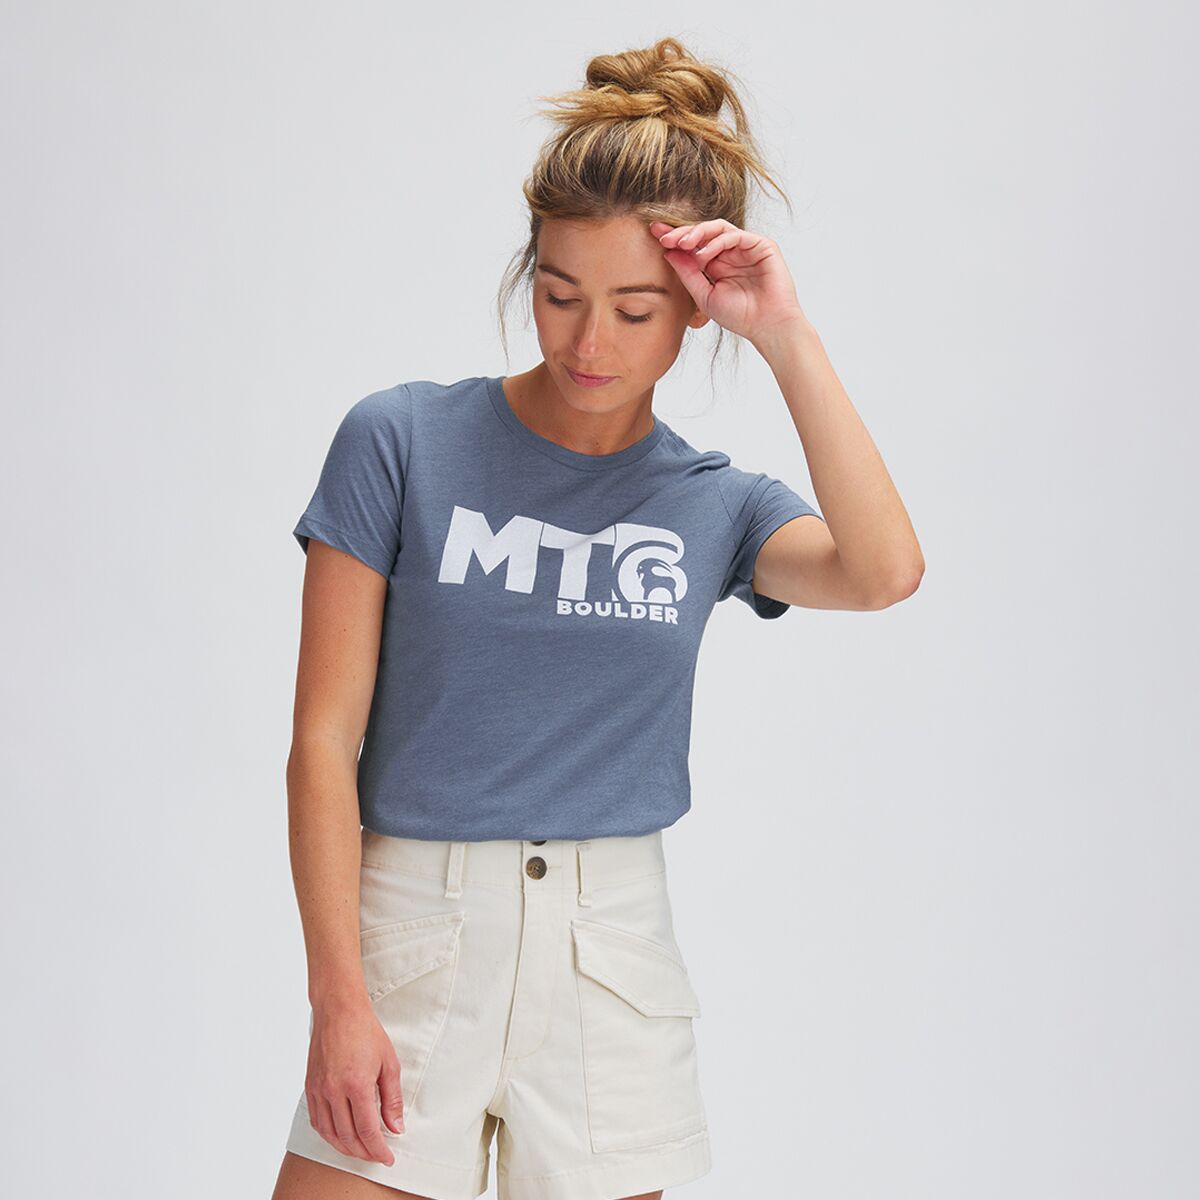 Backcountry MTB Boulder T-Shirt - Women's